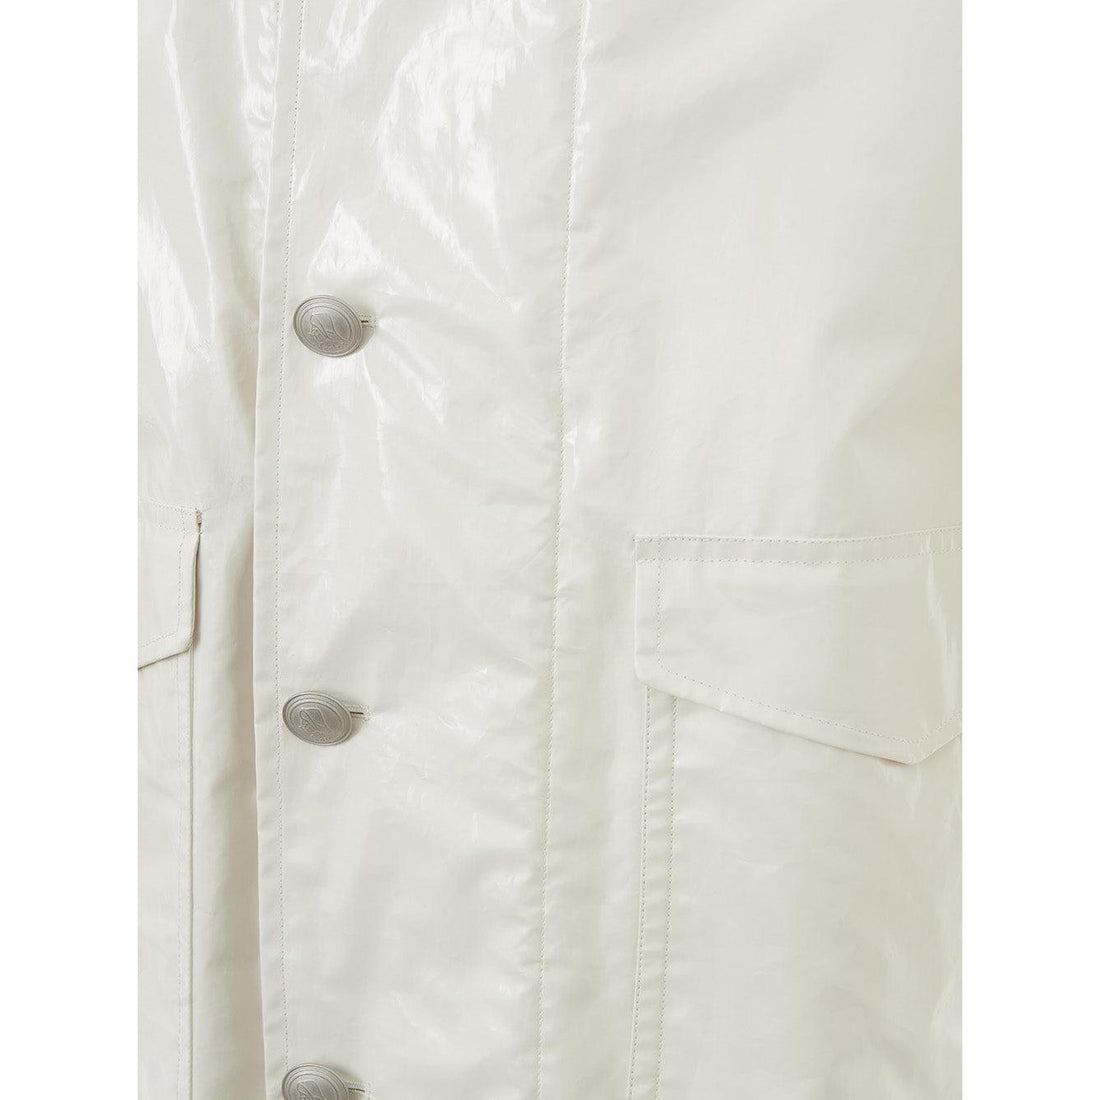 Sealup White Long Raincoat